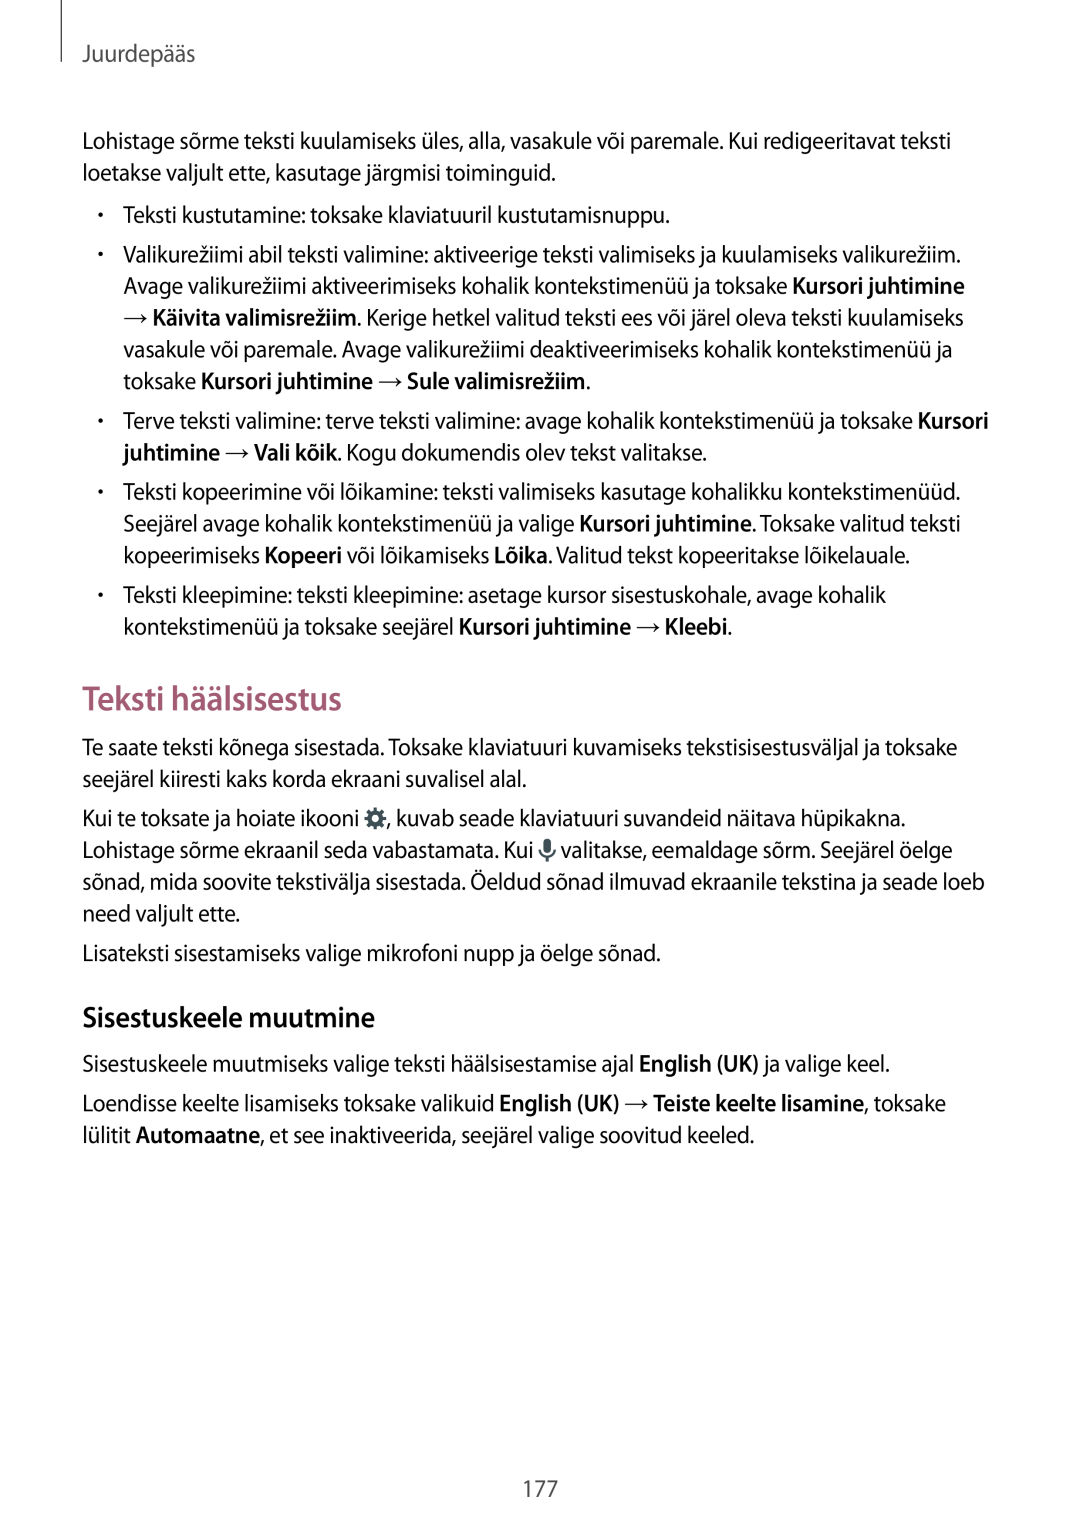 Samsung SM-T700NTSASEB, SM-T700NZWASEB manual Teksti häälsisestus, Sisestuskeele muutmine, Juurdepääs 